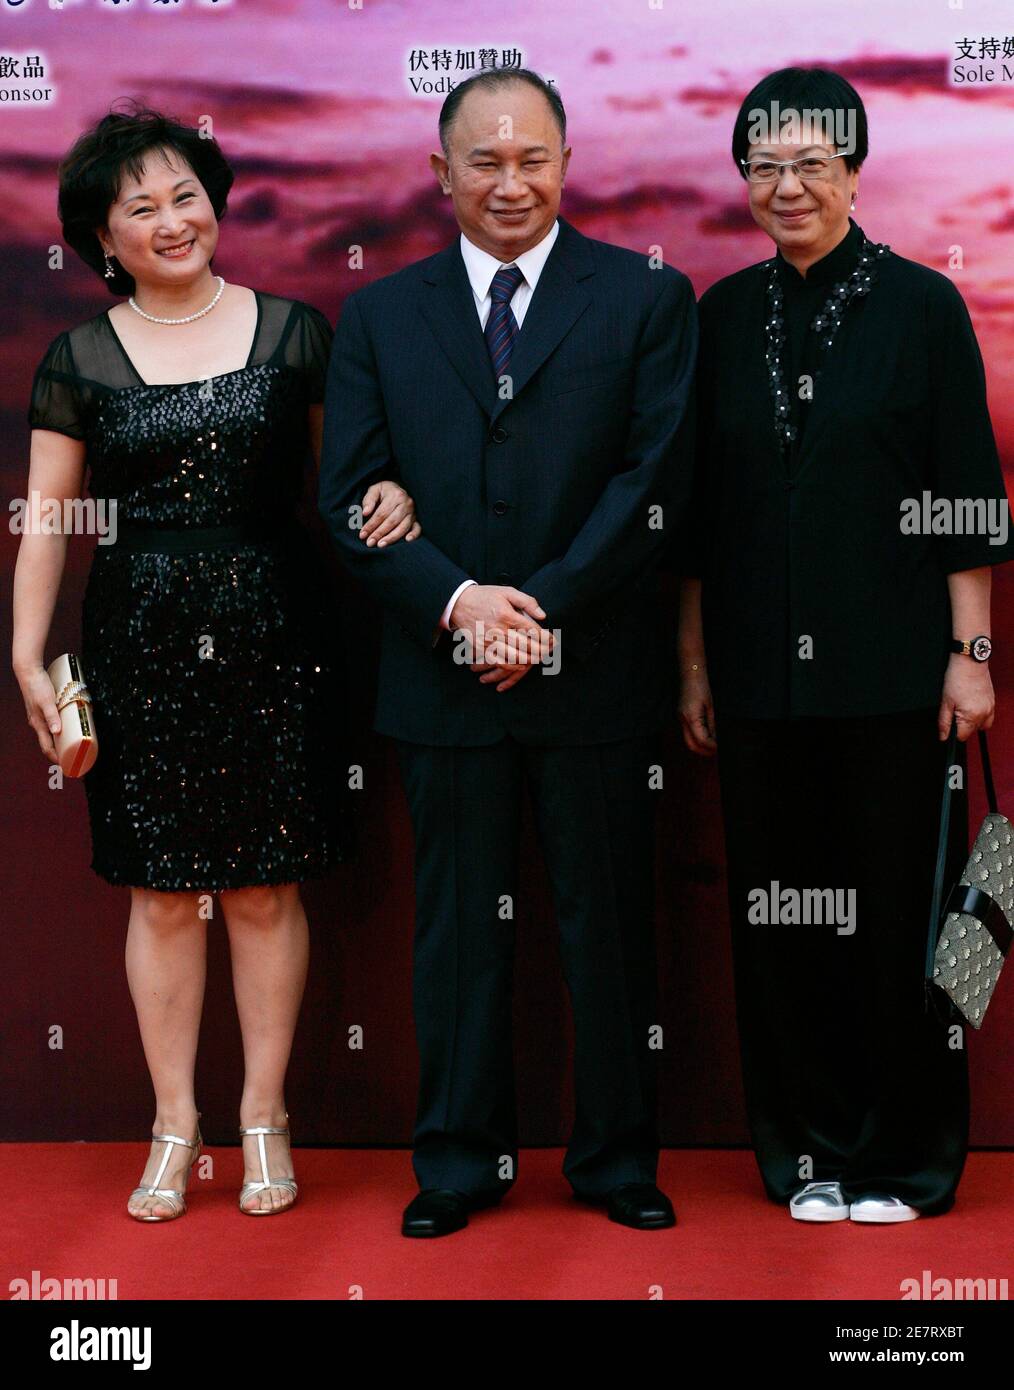 Hong Kong director John Woo (C), his wife Annie and Hong Kong director Ann Hui (R) arrive at the Hong Kong Film Awards April 19, 2009.   REUTERS/Tyrone Siu   (CHINA ENTERTAINMENT) Stock Photo